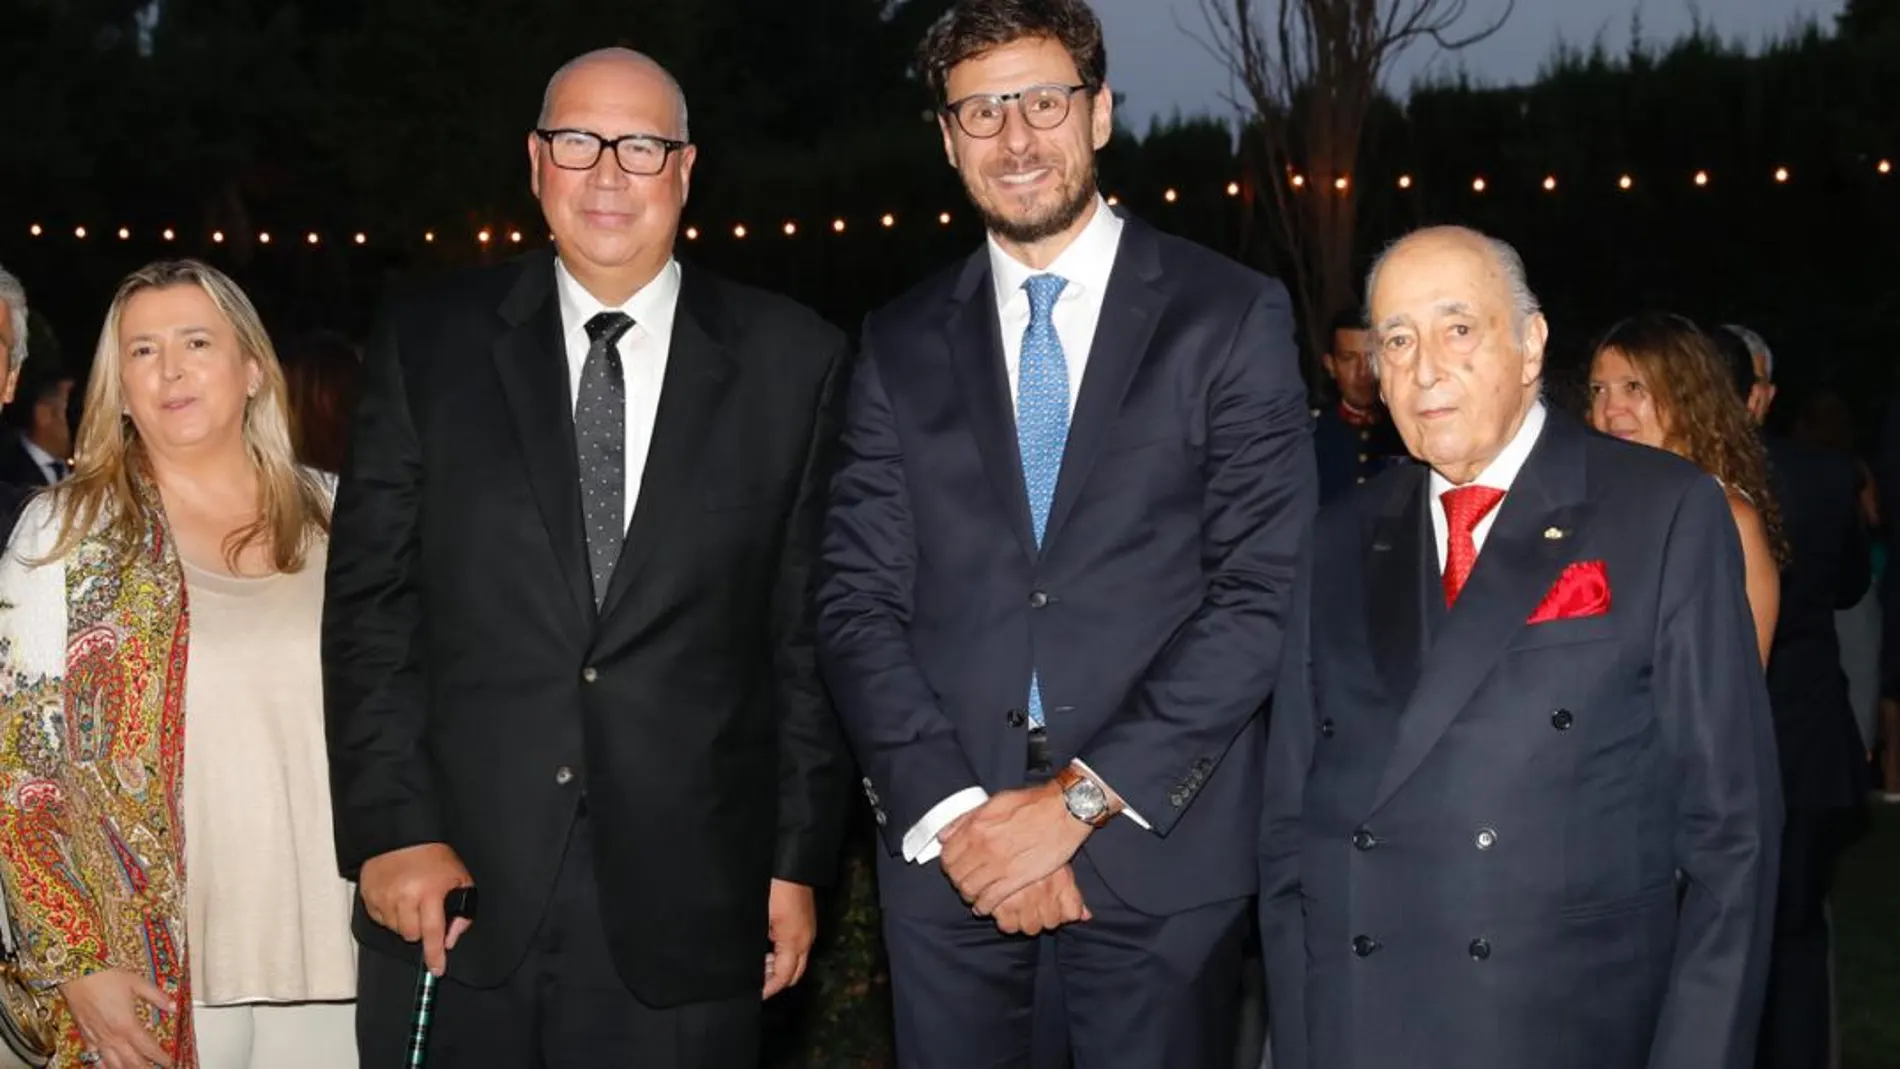 Jorge Tagle Canelo (izquierda), acompañado de Conrado Briceño, Presidente de la Universidad Europea y el embajador Mariano Fontecilla